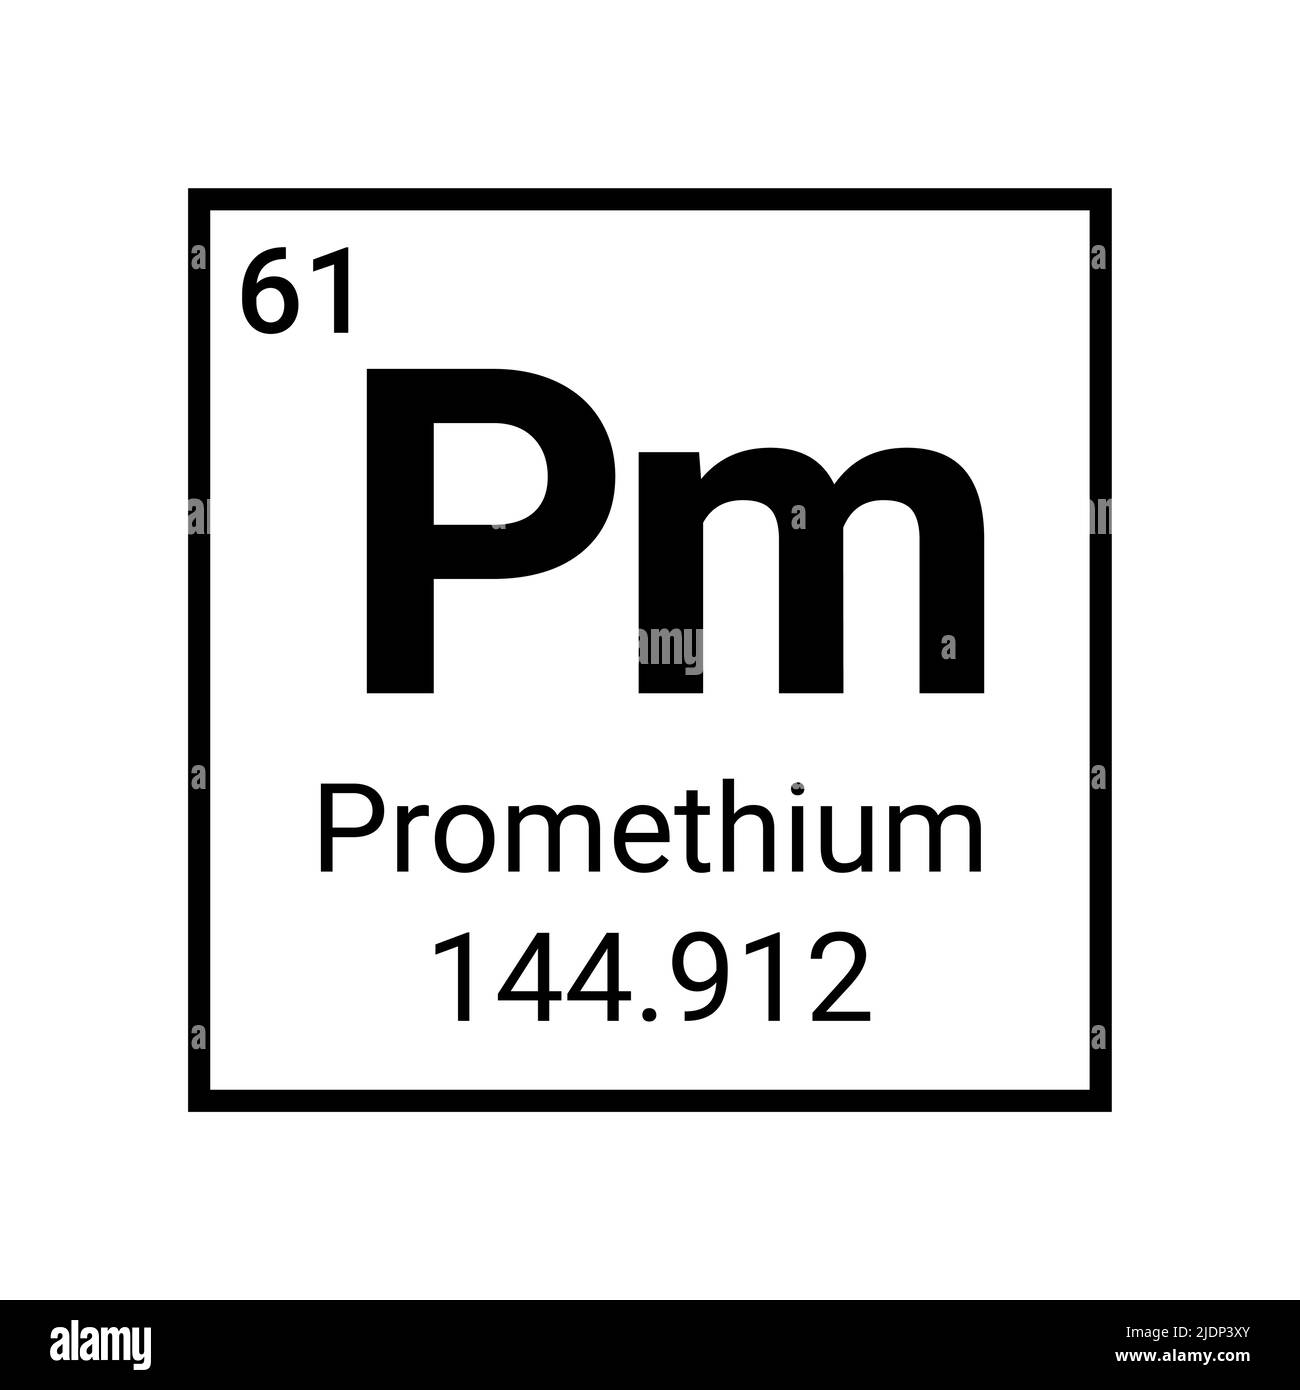 Promethium chemical element atom symbol periodic table Stock Vector